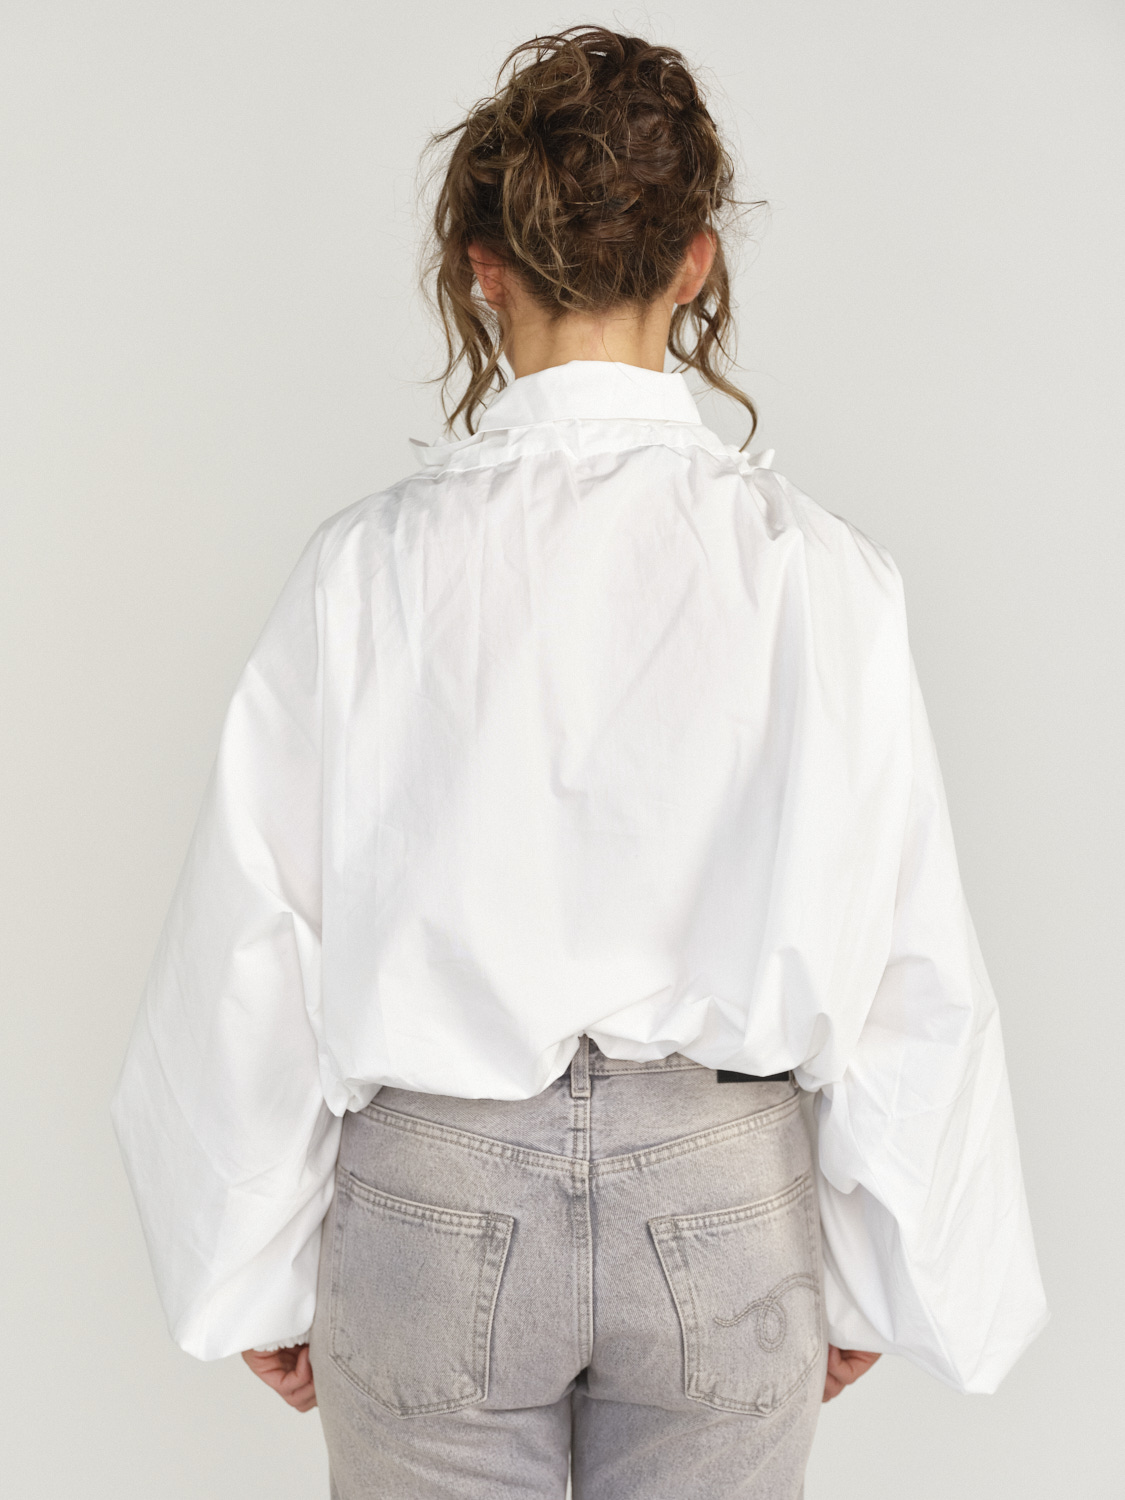 Patou Gros Grain – Oversized Bluse mit Rüschen Kragen weiss S/M